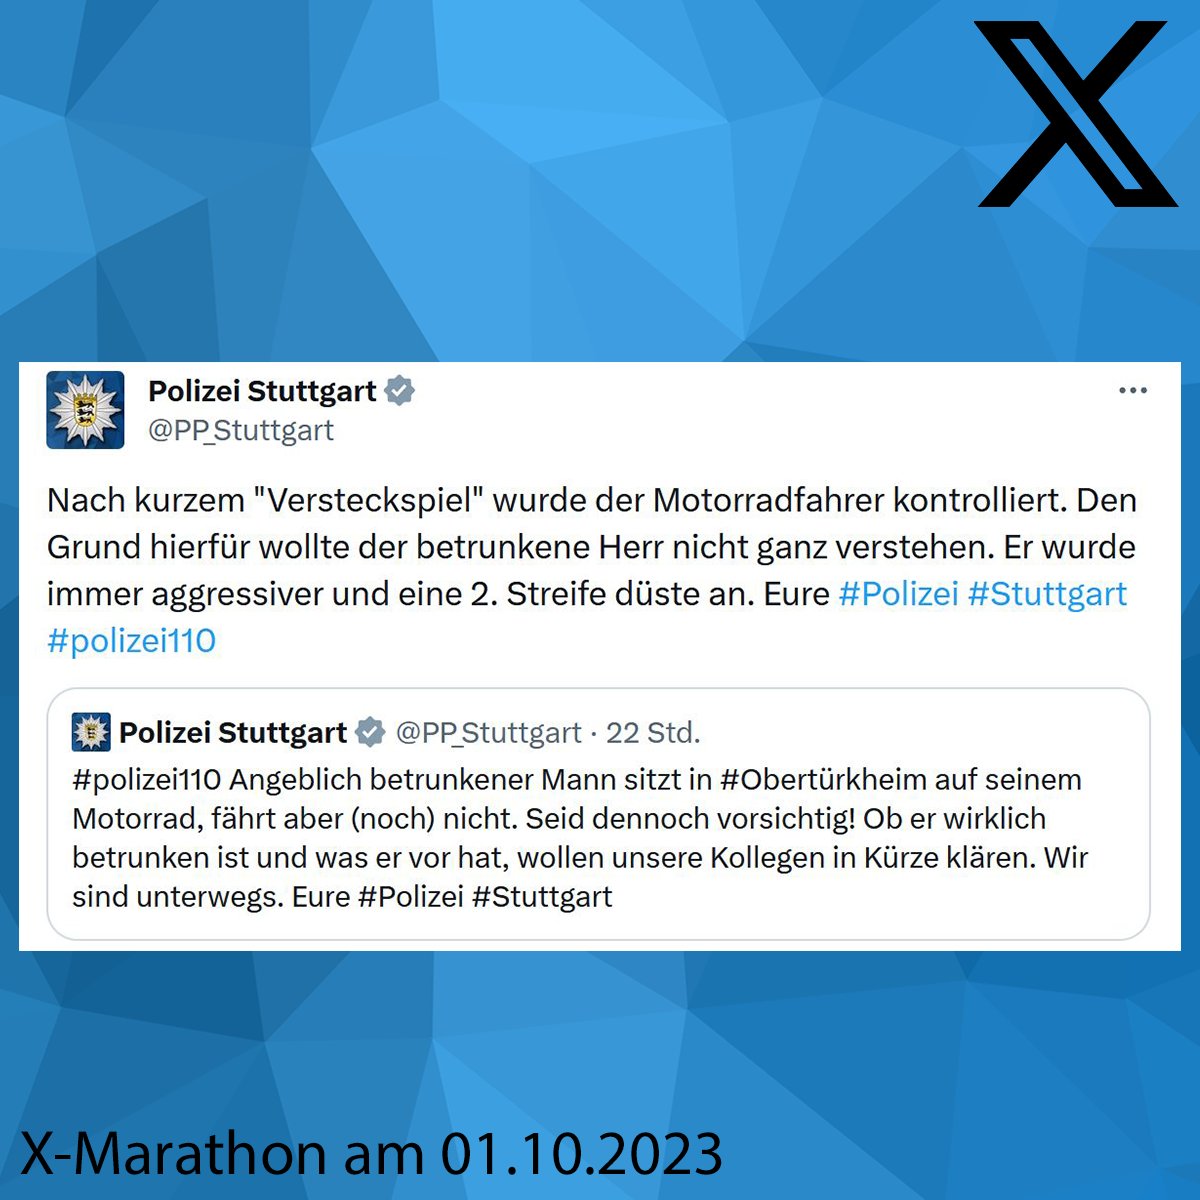 PP_Stuttgart tweet picture